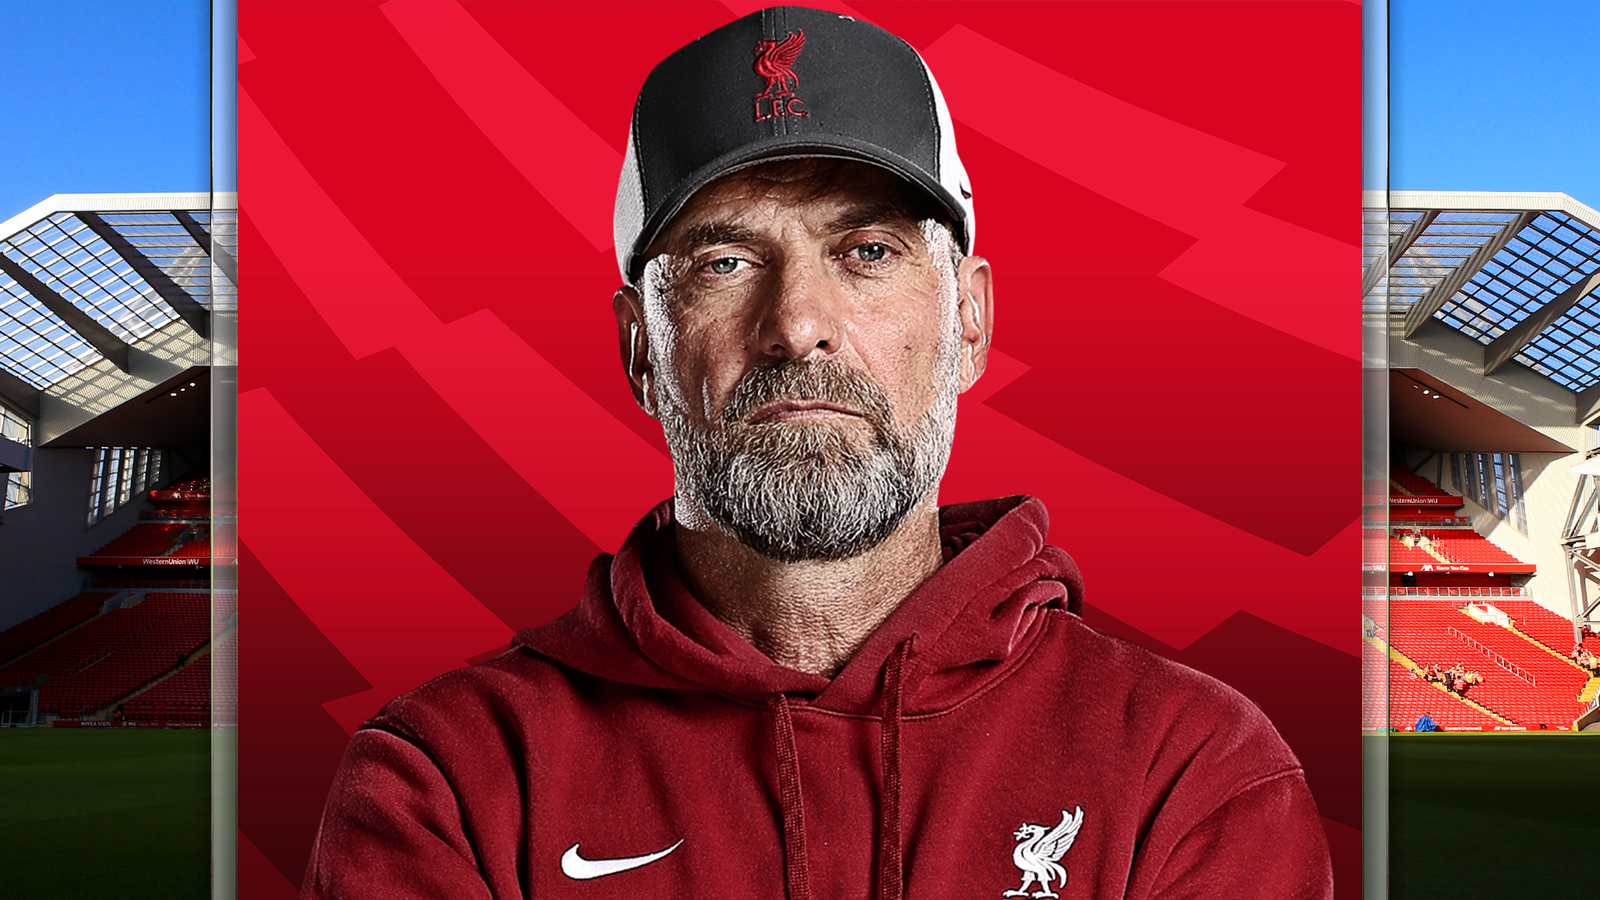 Exclusiva de Jurgen Klopp: el técnico del Liverpool en vacaciones de invierno, lucha en cuatro frentes y cautela en el mercado de fichajes |  Noticias de futbol